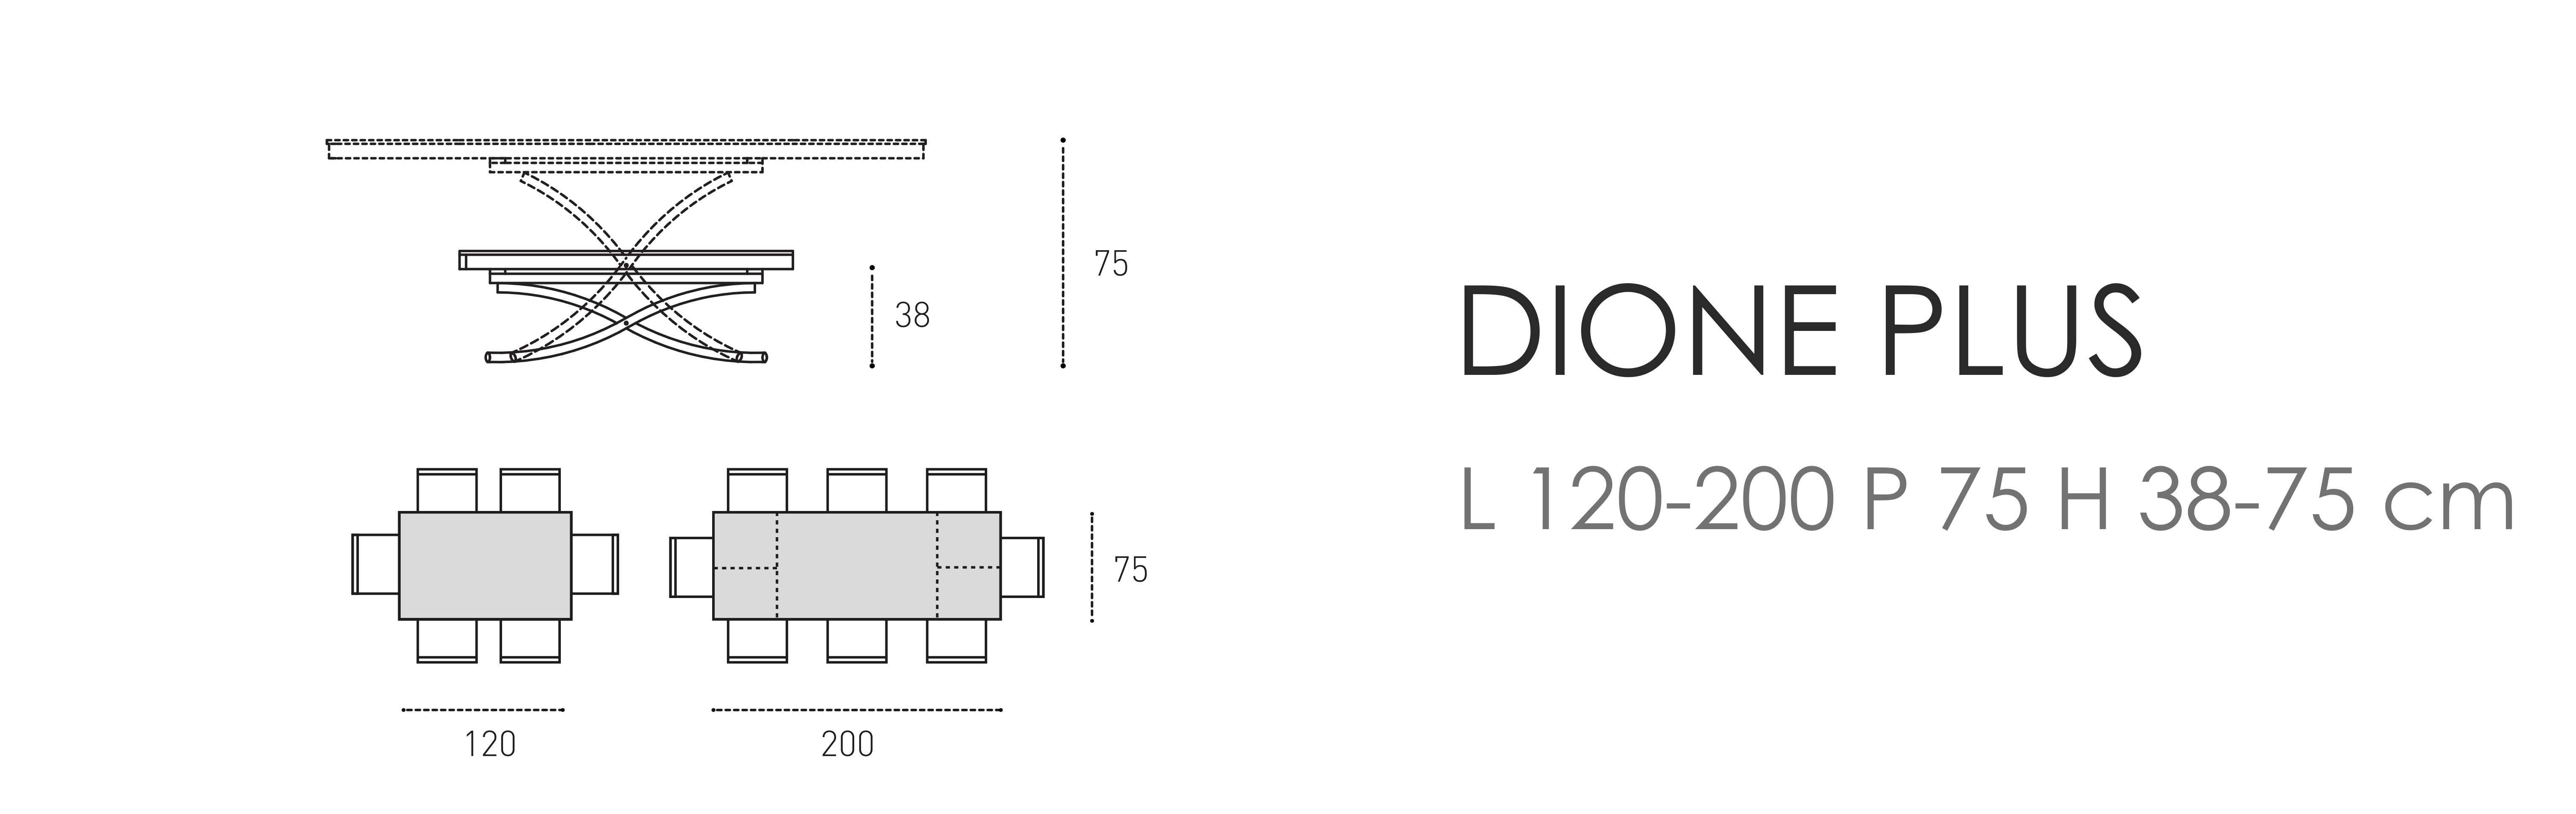 Dione Plus L 120-200 P 75 H 38-75 cm 